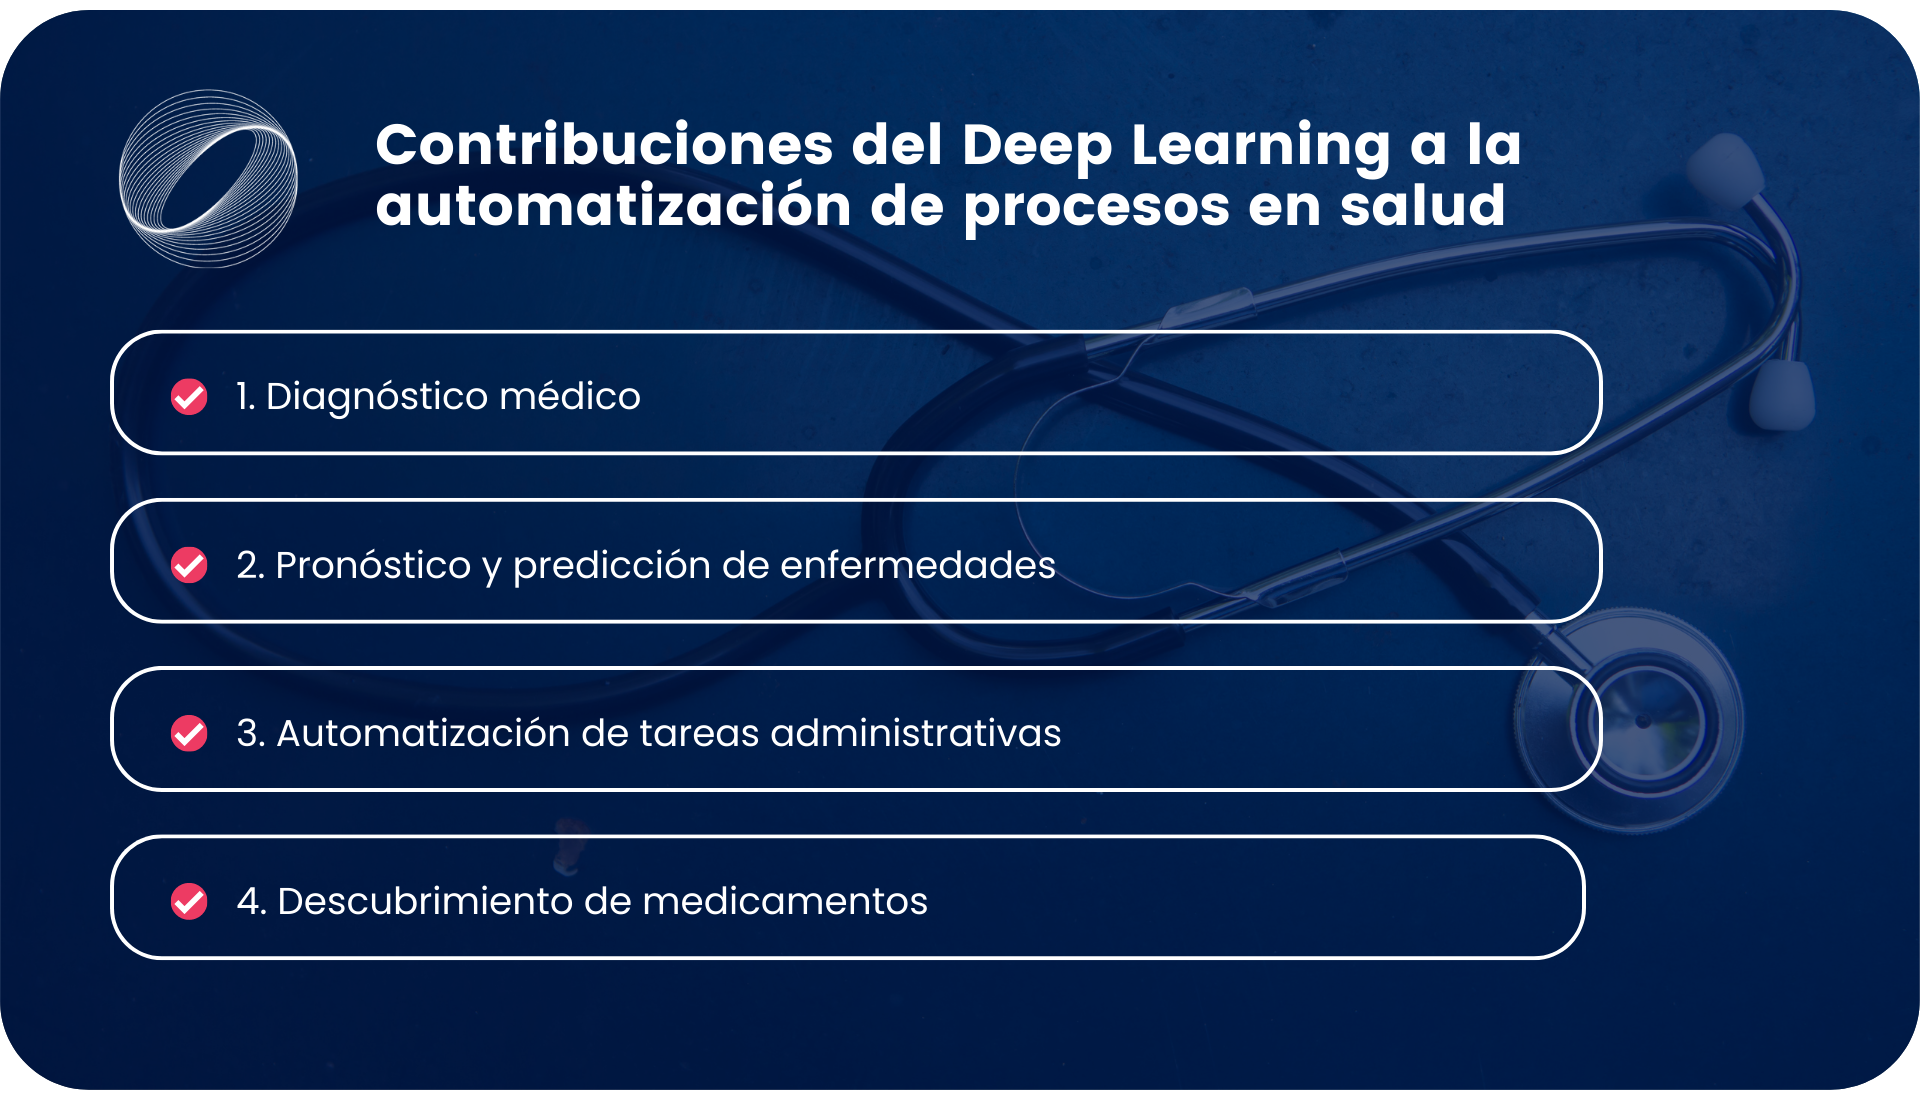 Contribuciones del Deep Learning a la automatización de procesos en salud